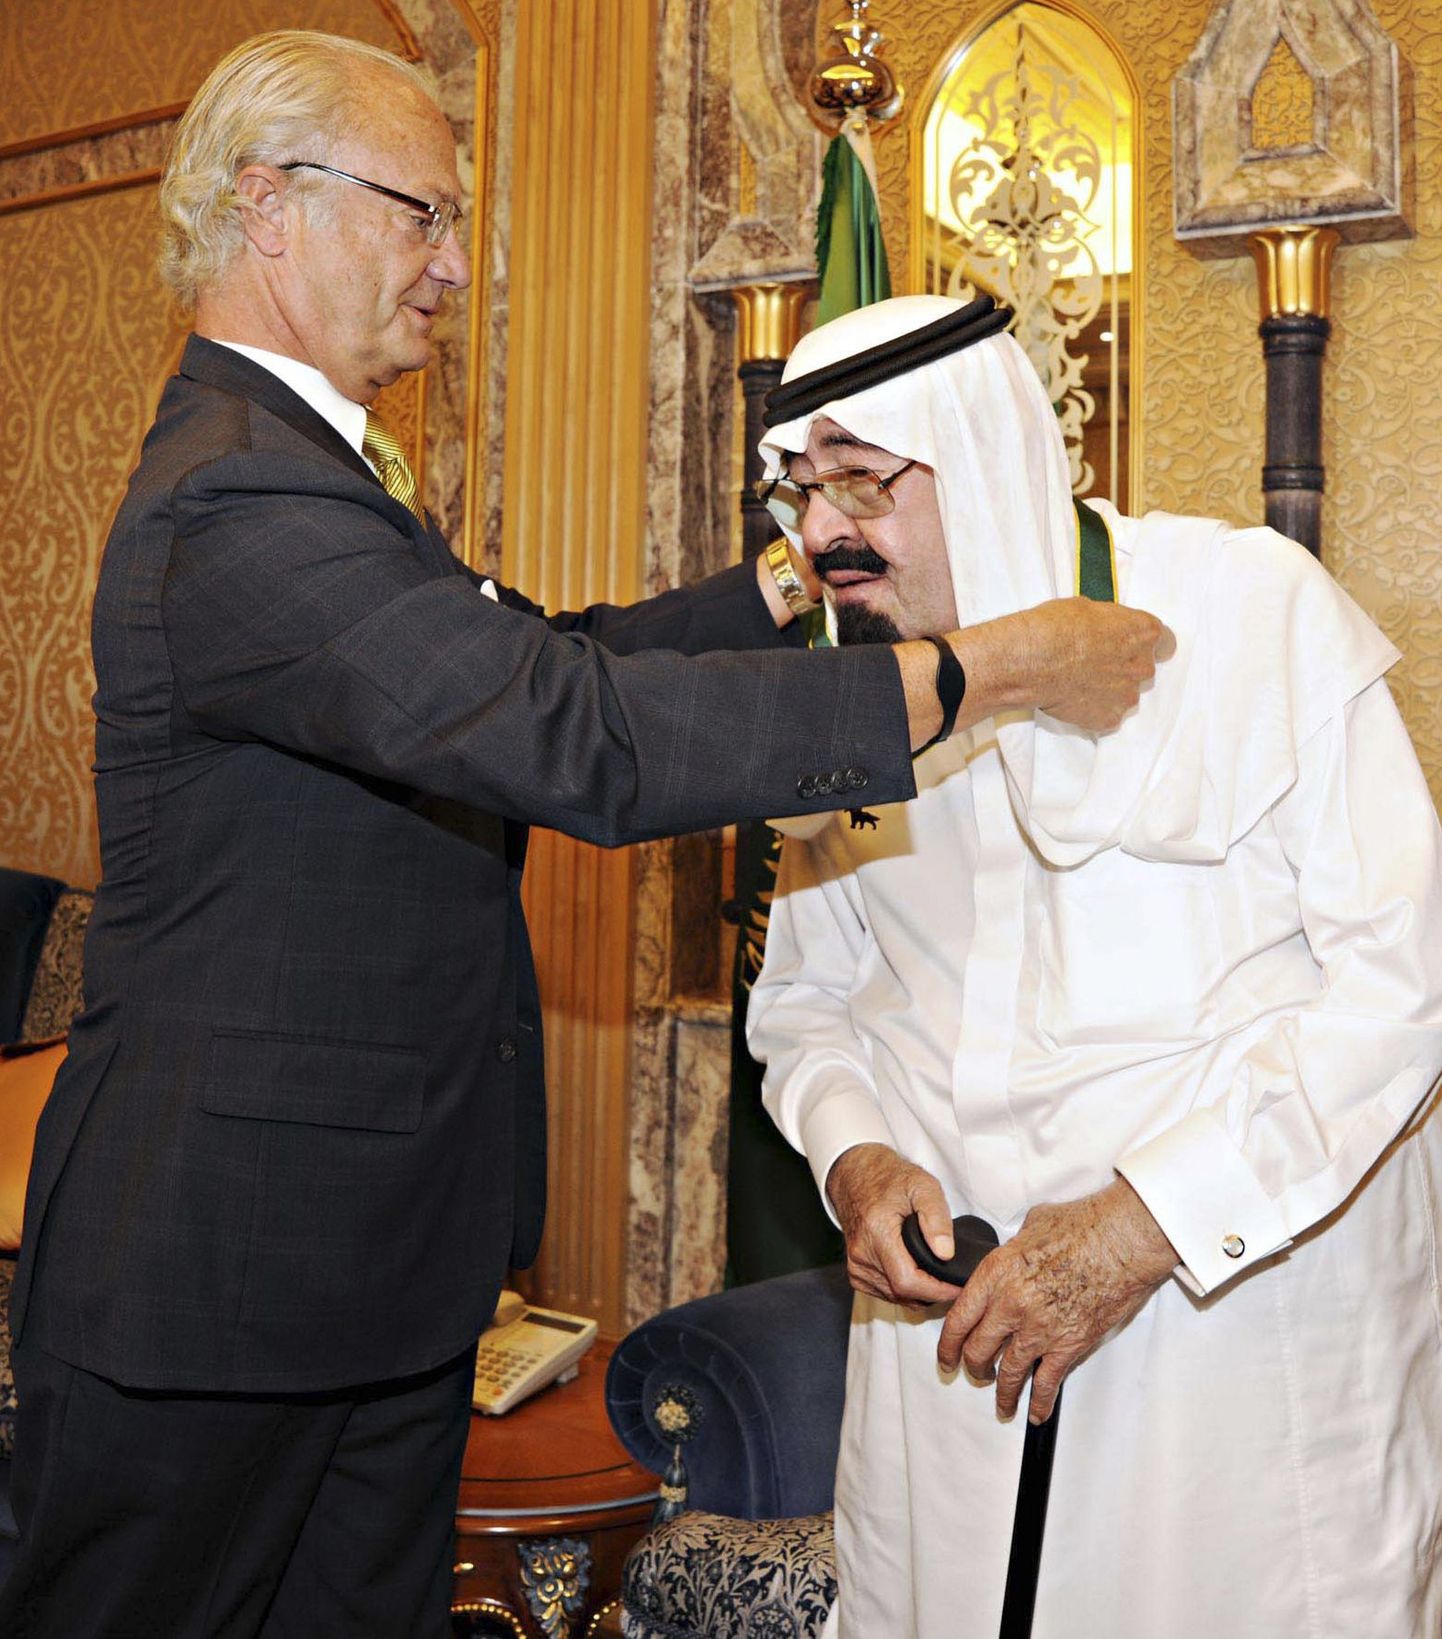 Rootsi kuningas Carl  XVI Gustaf andmas skautide aumedalit Saudi Araabia kuningale Abdullahile